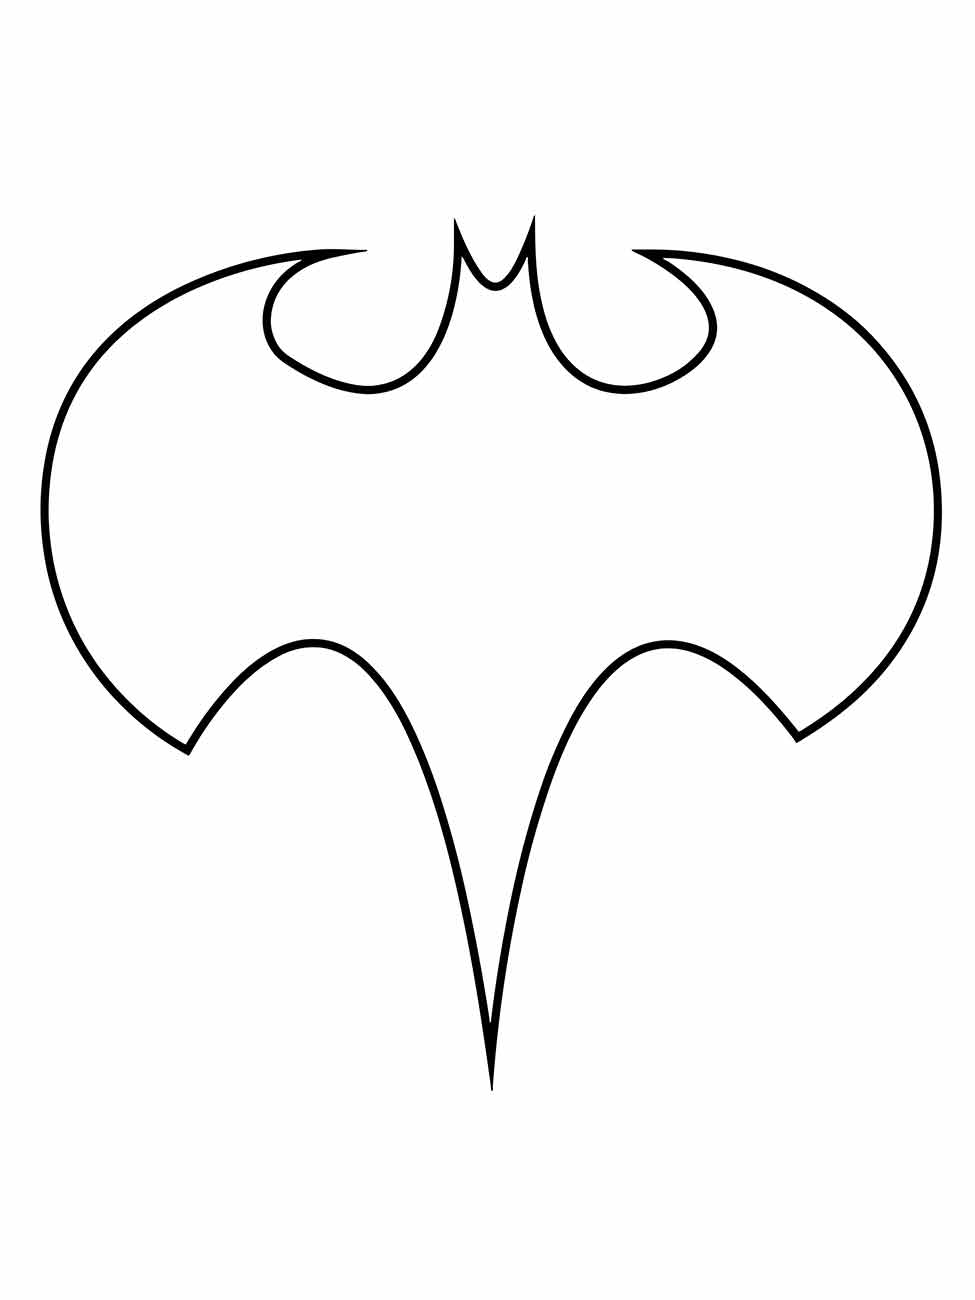 simbolo do batman para colorir